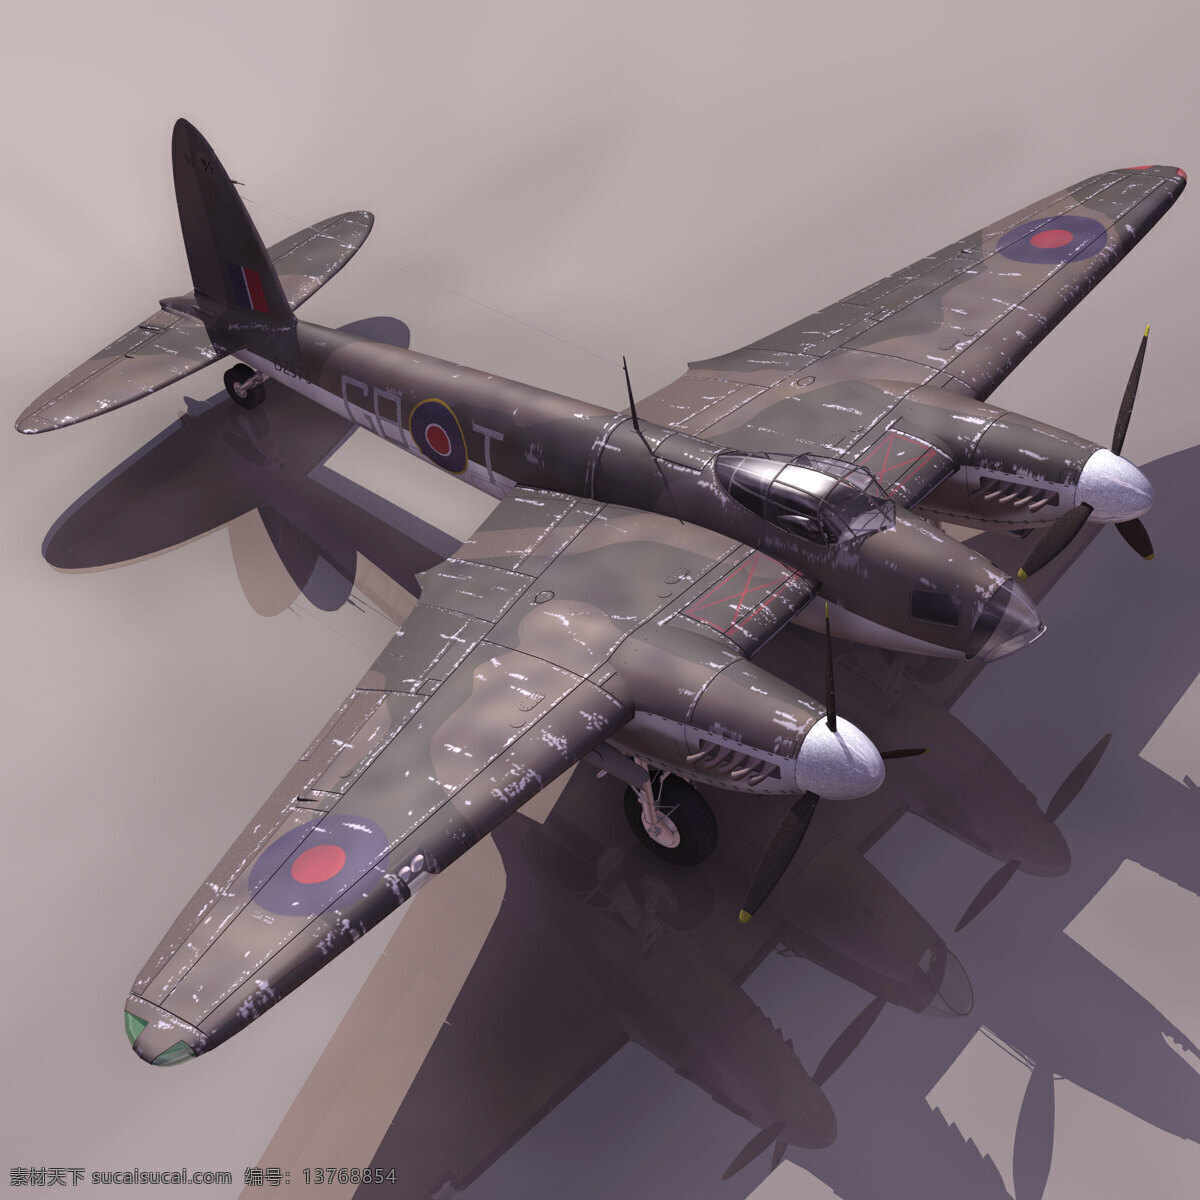 英国 蚊 式 双发 重 战机 飞机 模型 英国蚊式 双发重战机 3d模型素材 游戏cg模型